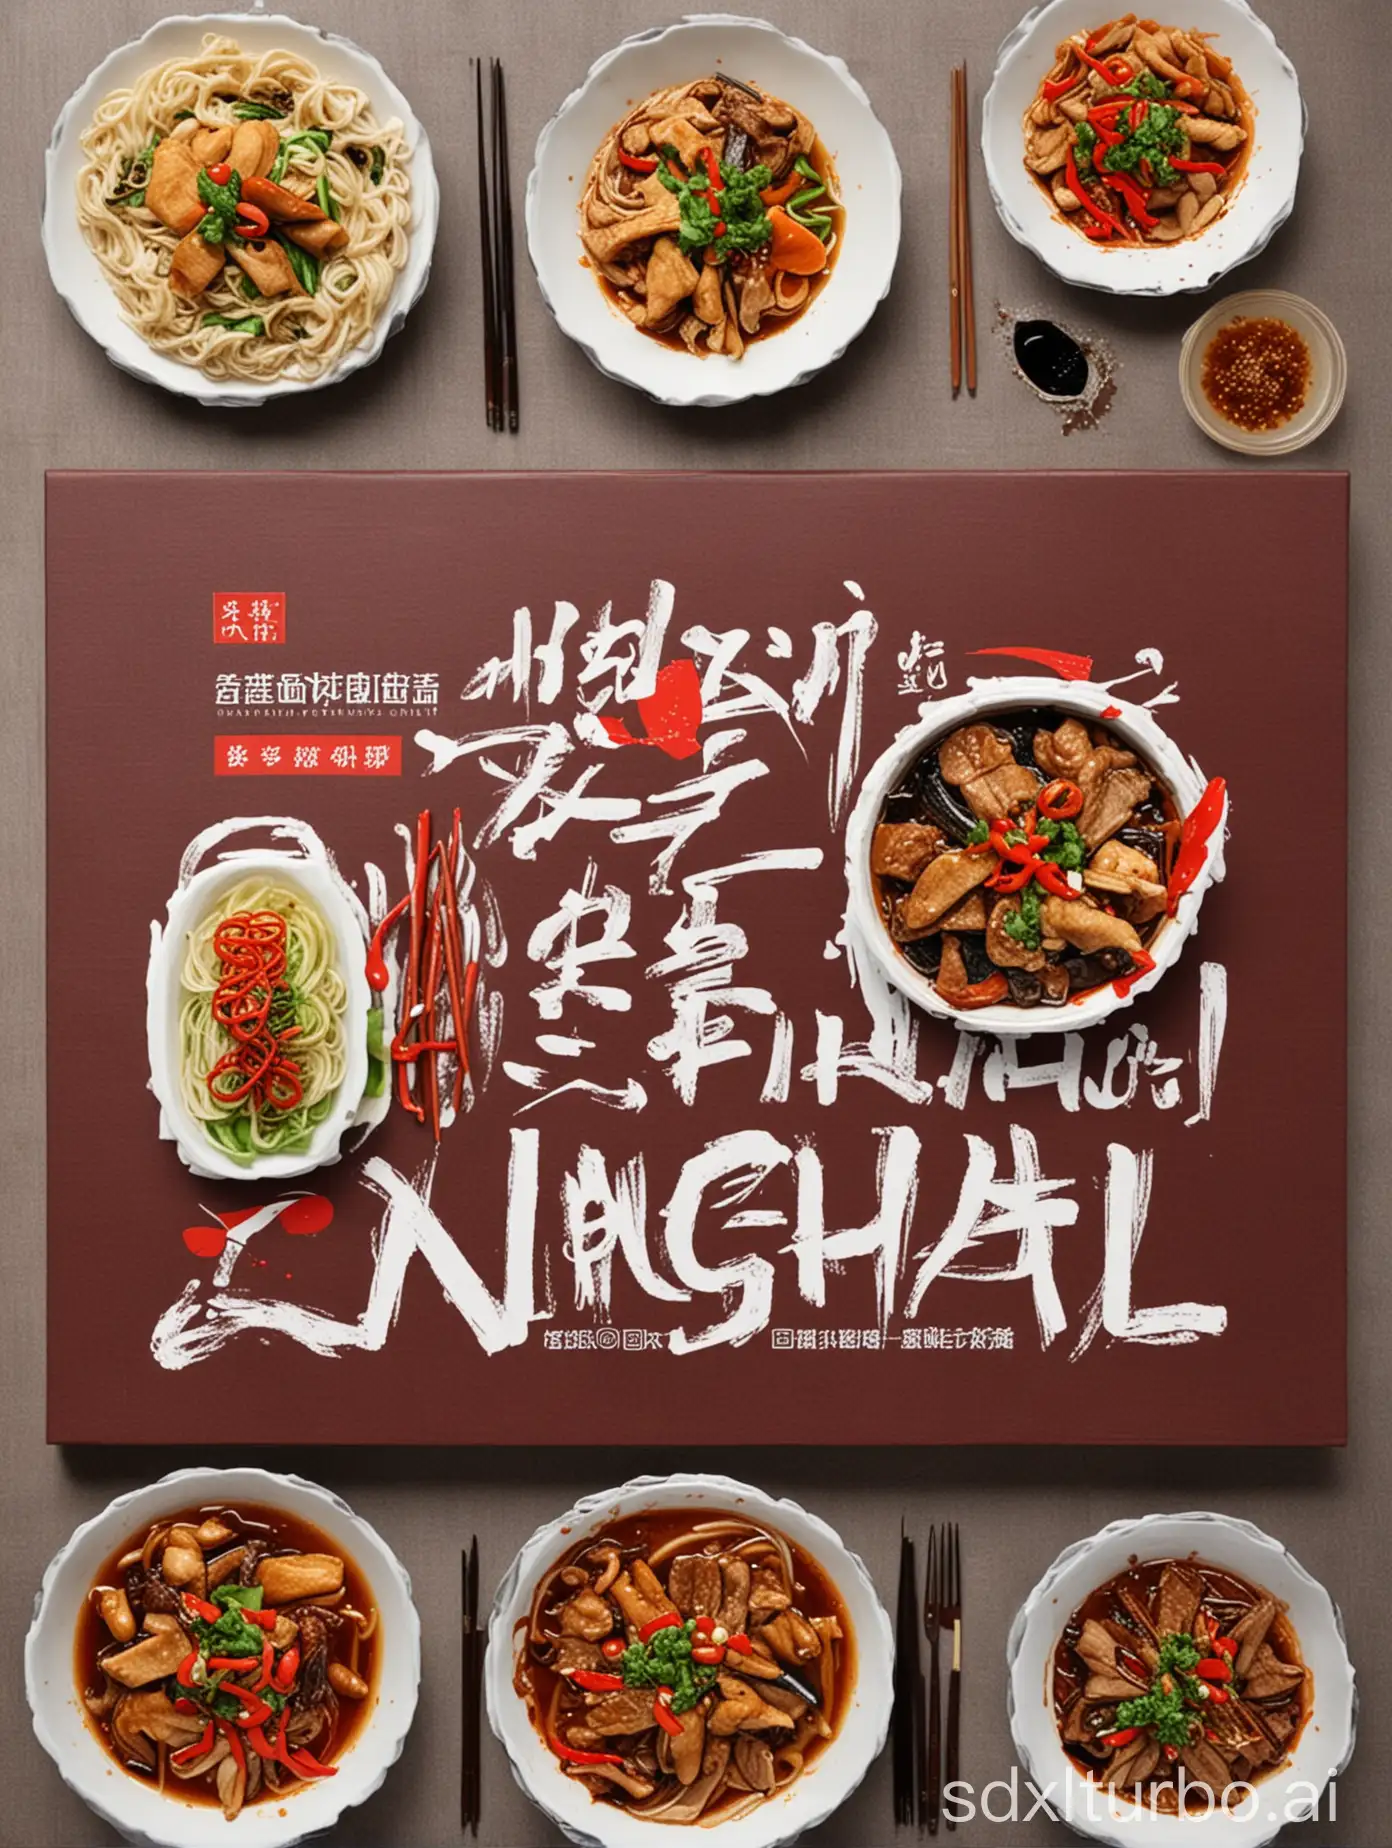 绘制一张中国宁海美食的图片作为视频封面